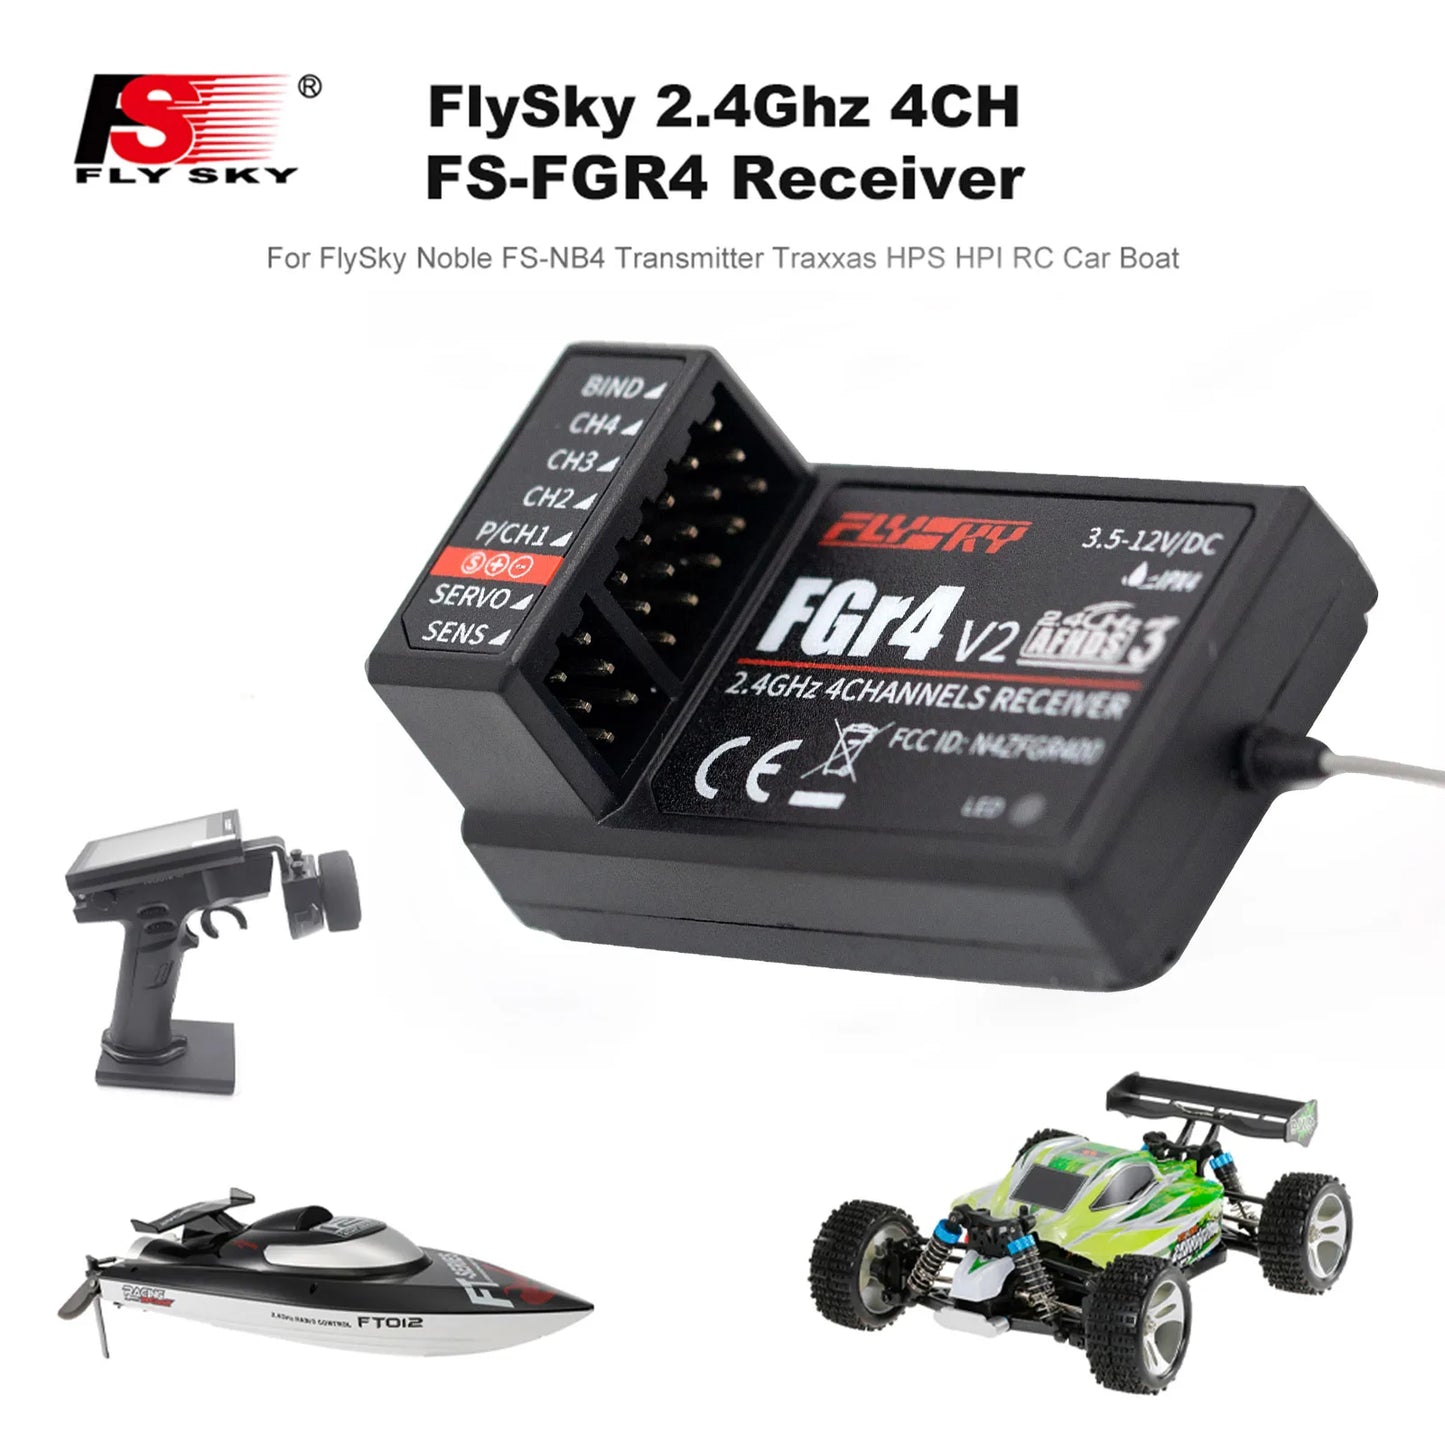 FlySky FS-FGR4 2.4Ghz 4CH Receiver -  AFHDS3 for FlySky Noble FS-NB4 Transmitter